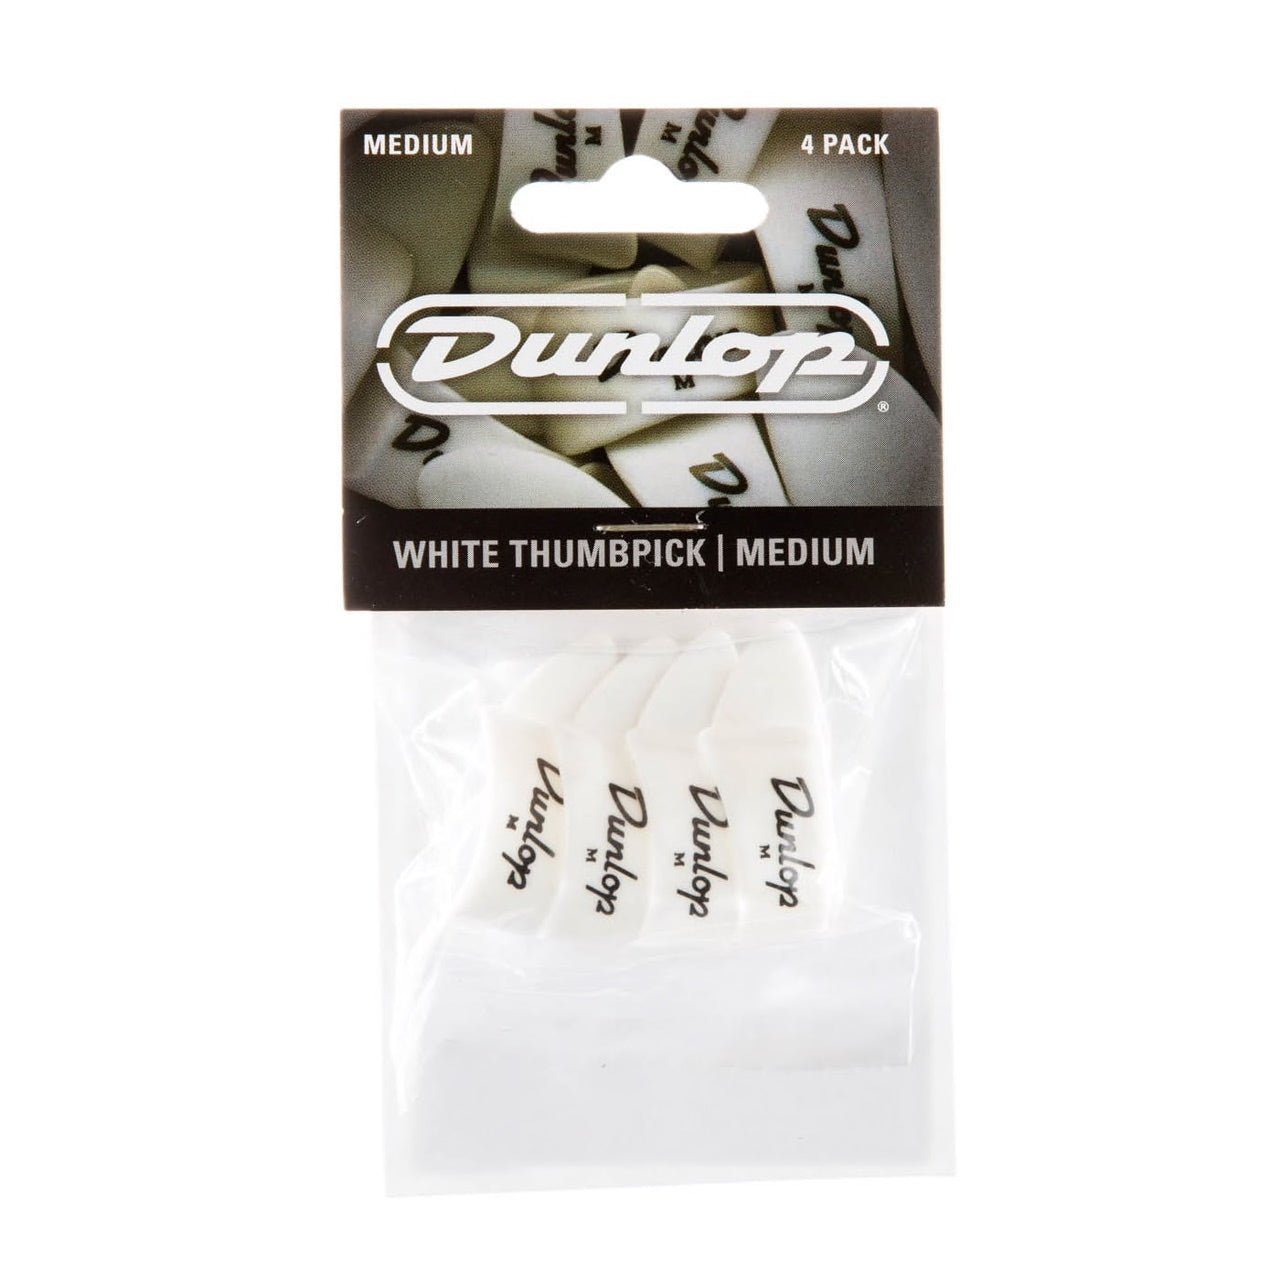 DUNLOP 9002 Medium White Plastic Thumbpicks - 4 Pack